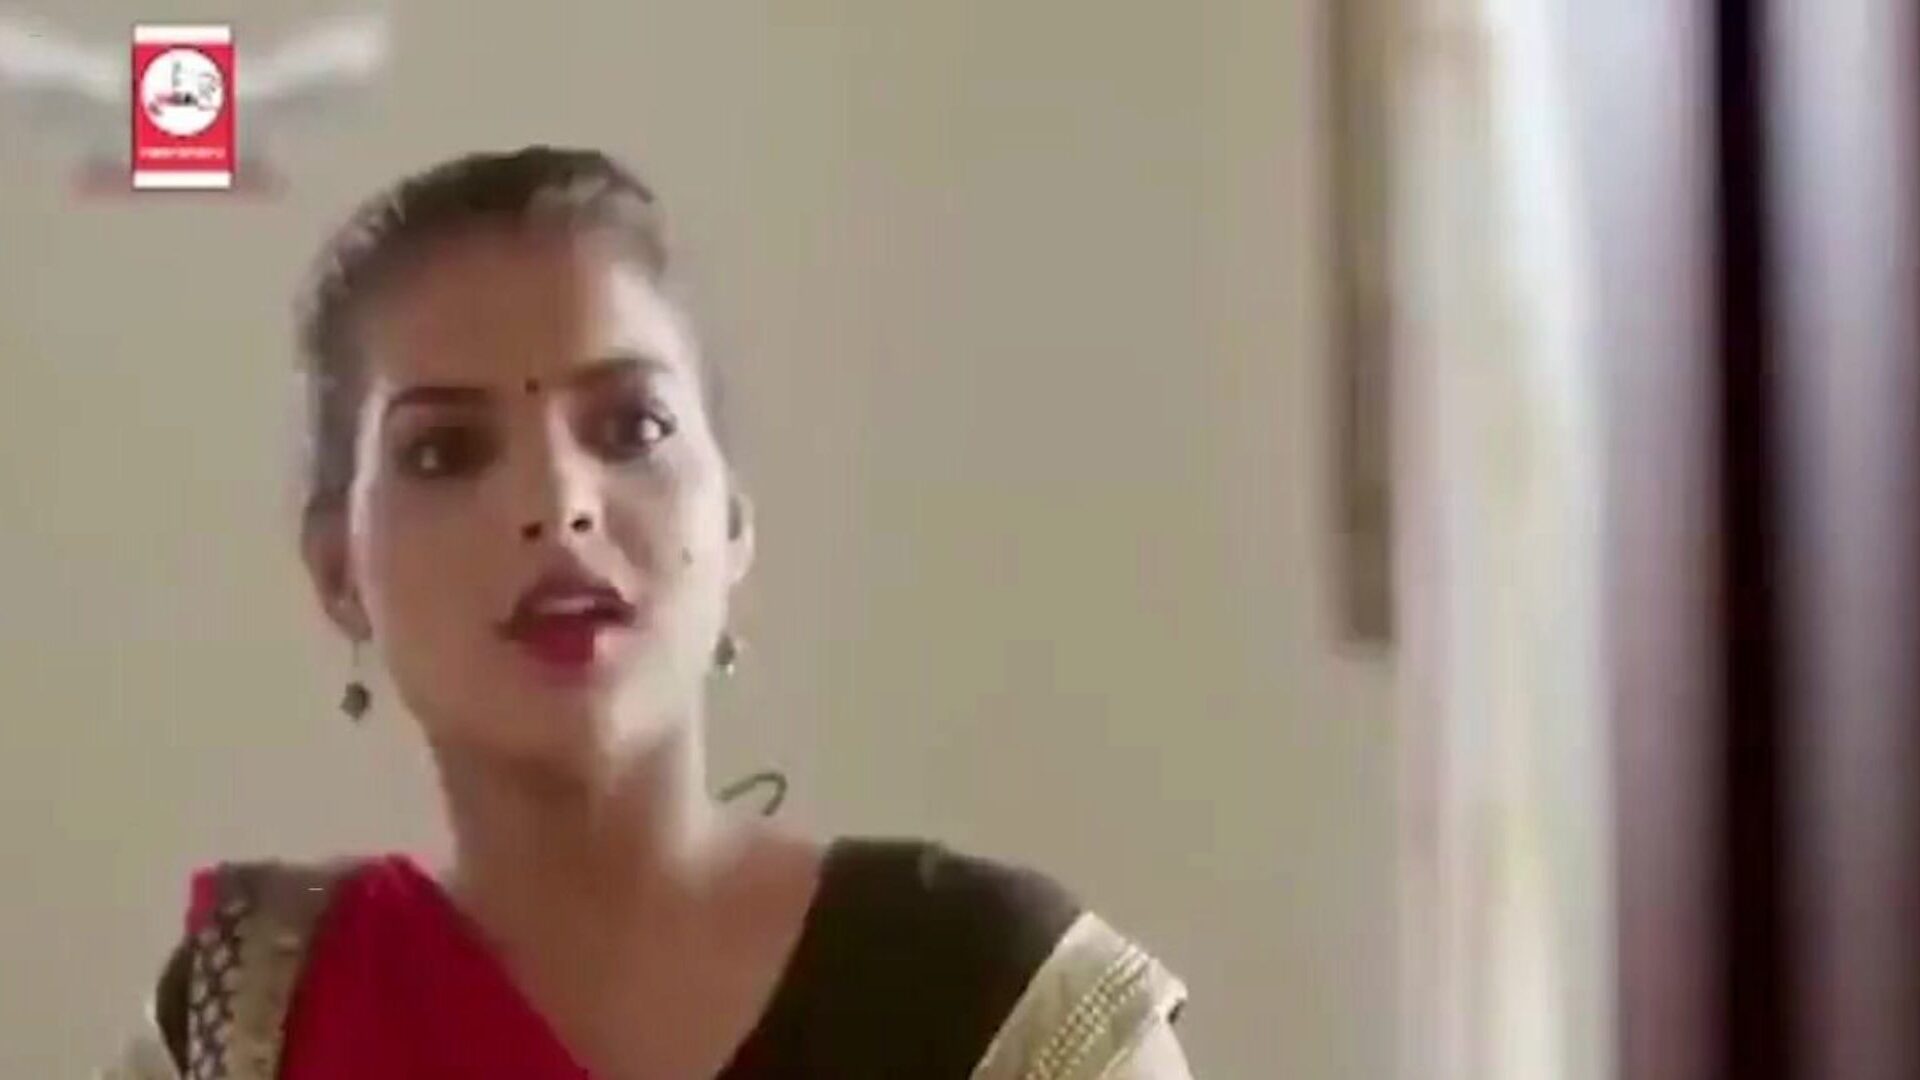 nye og siste hot indiske webserier 2020, porno 2a: xhamster se nye og siste hot indiske webserier 2020 filmscene på xhamster, den massive hd fucky-fucky tube websiden med massevis av gratis hardcore dusj og red tube hot porno filmer